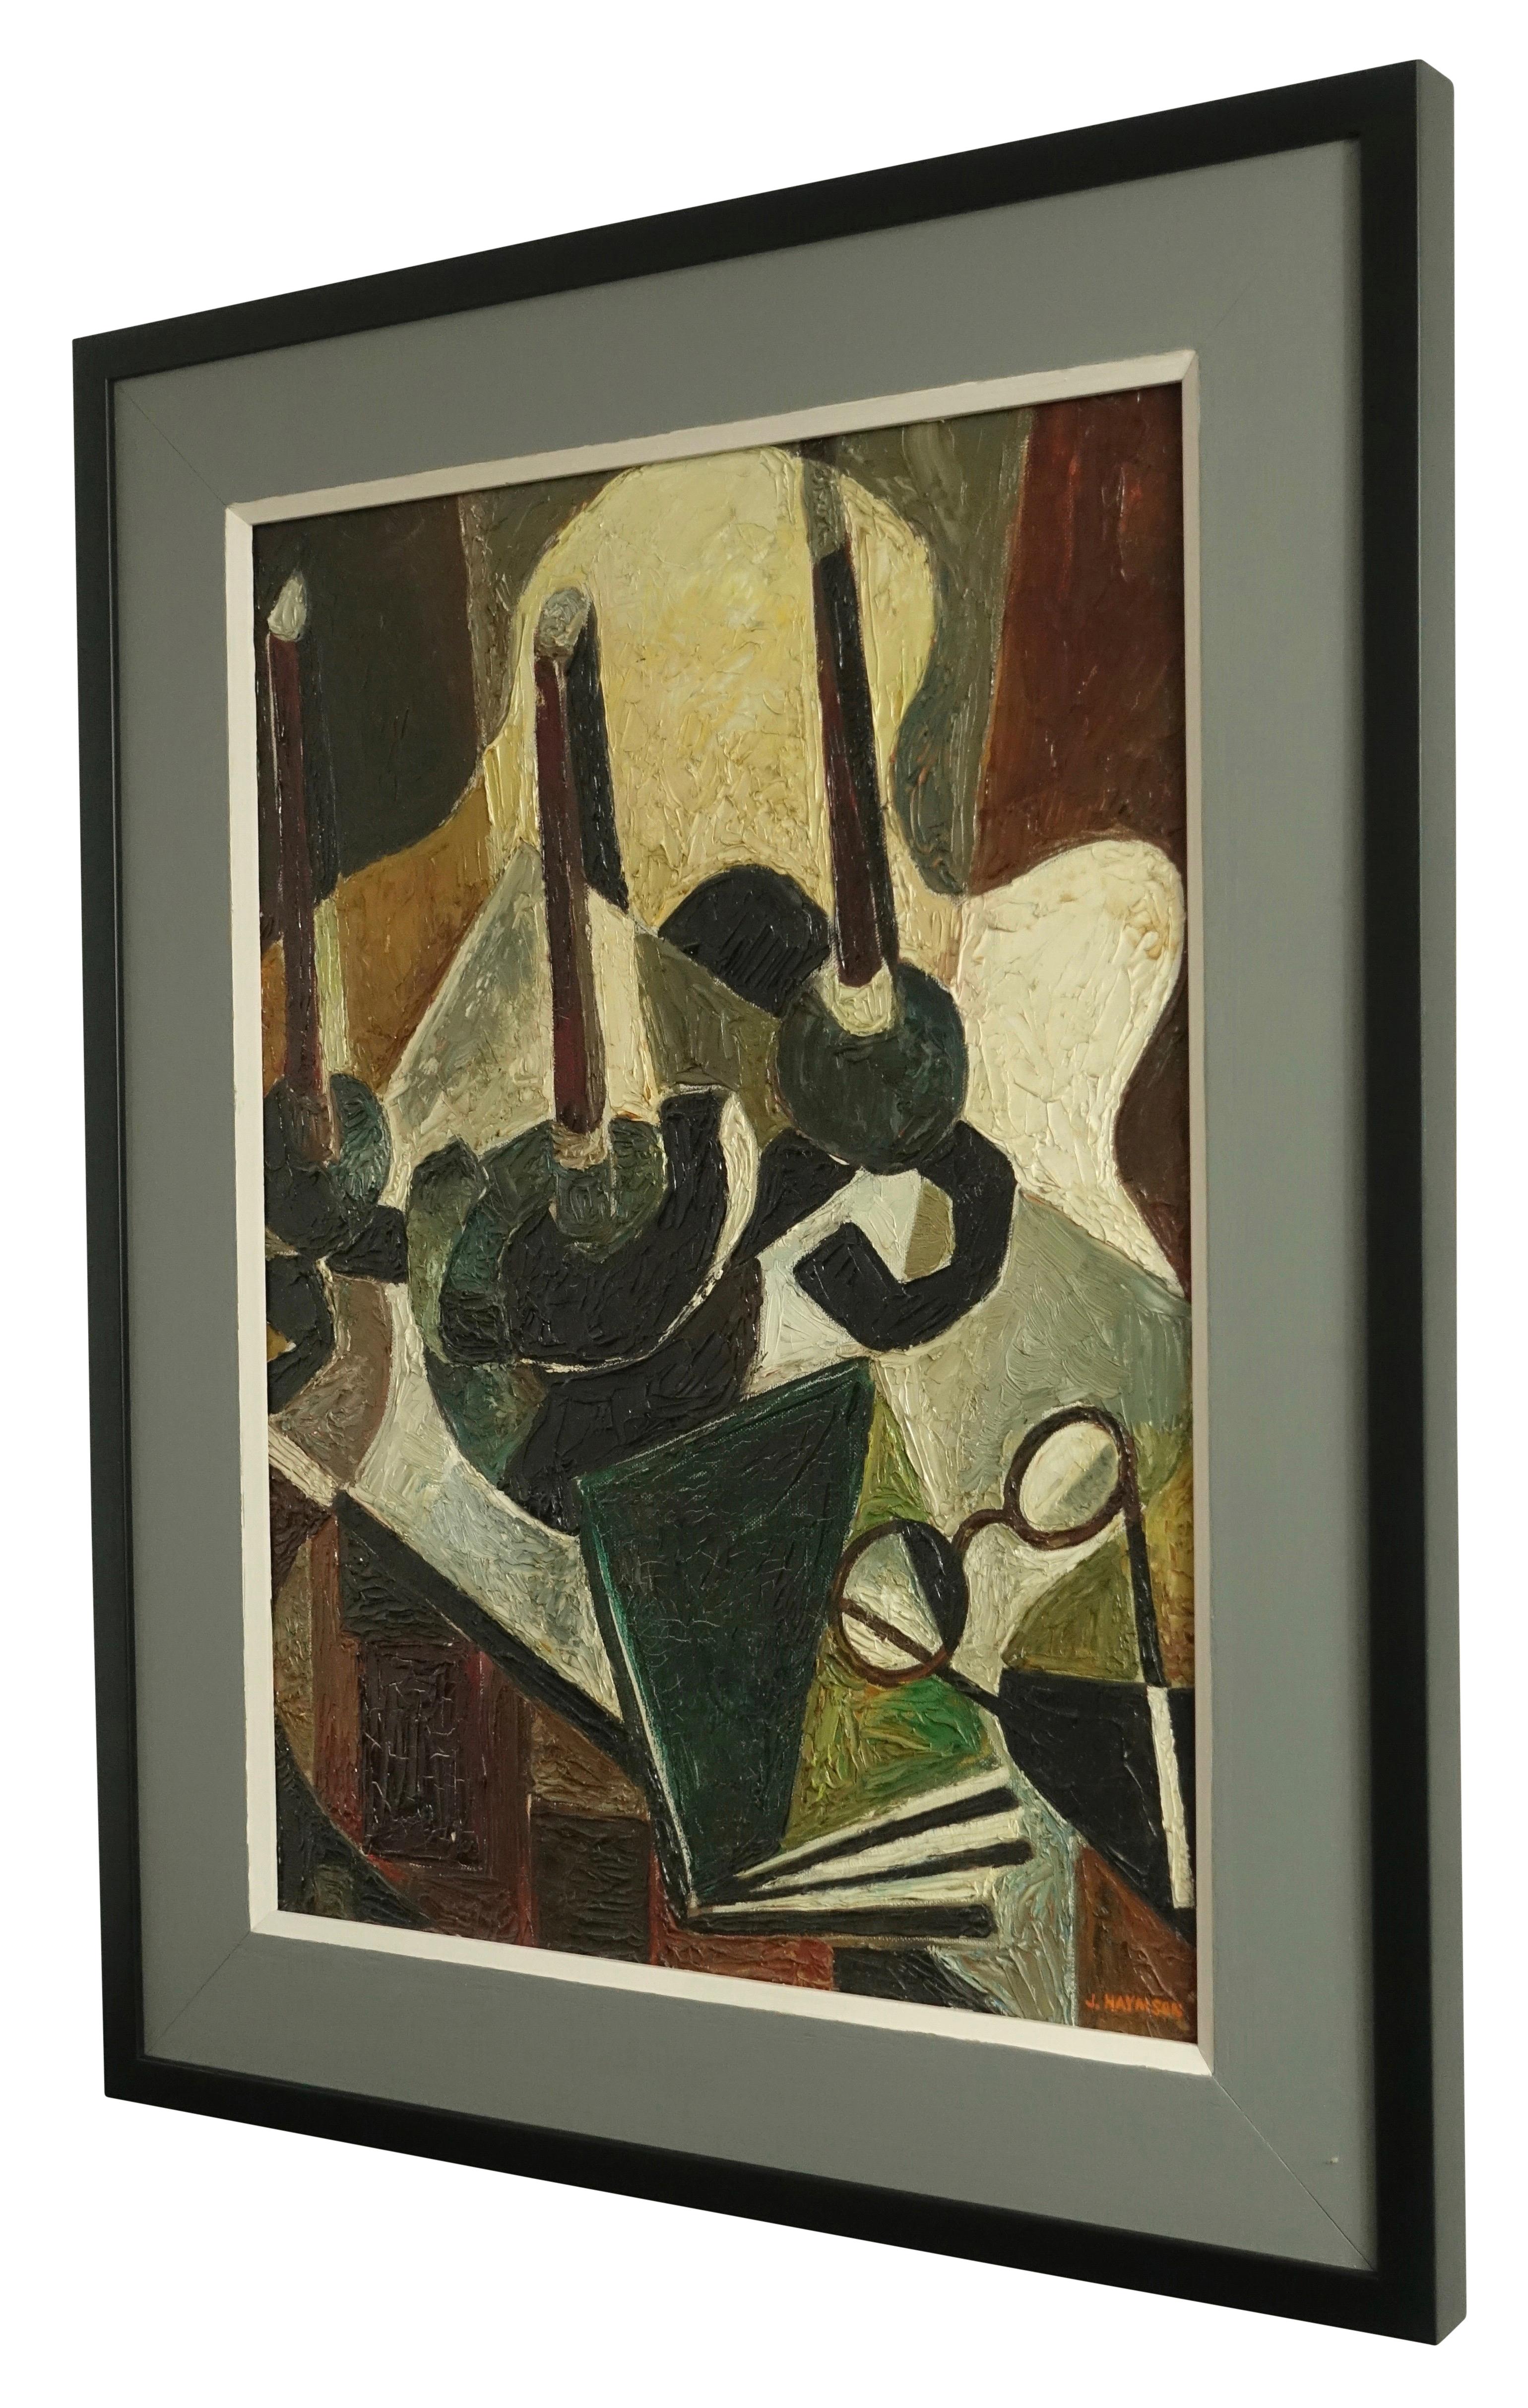 Nature morte expressionniste abstraite d'une vue d'intérieur. Huile sur toile, signée J Haymson (B.1903-D.1980). Récemment encadré sur mesure. 

John Haymson était actif/vivait dans le district de Columbia. John Haymson est connu pour ses paysages